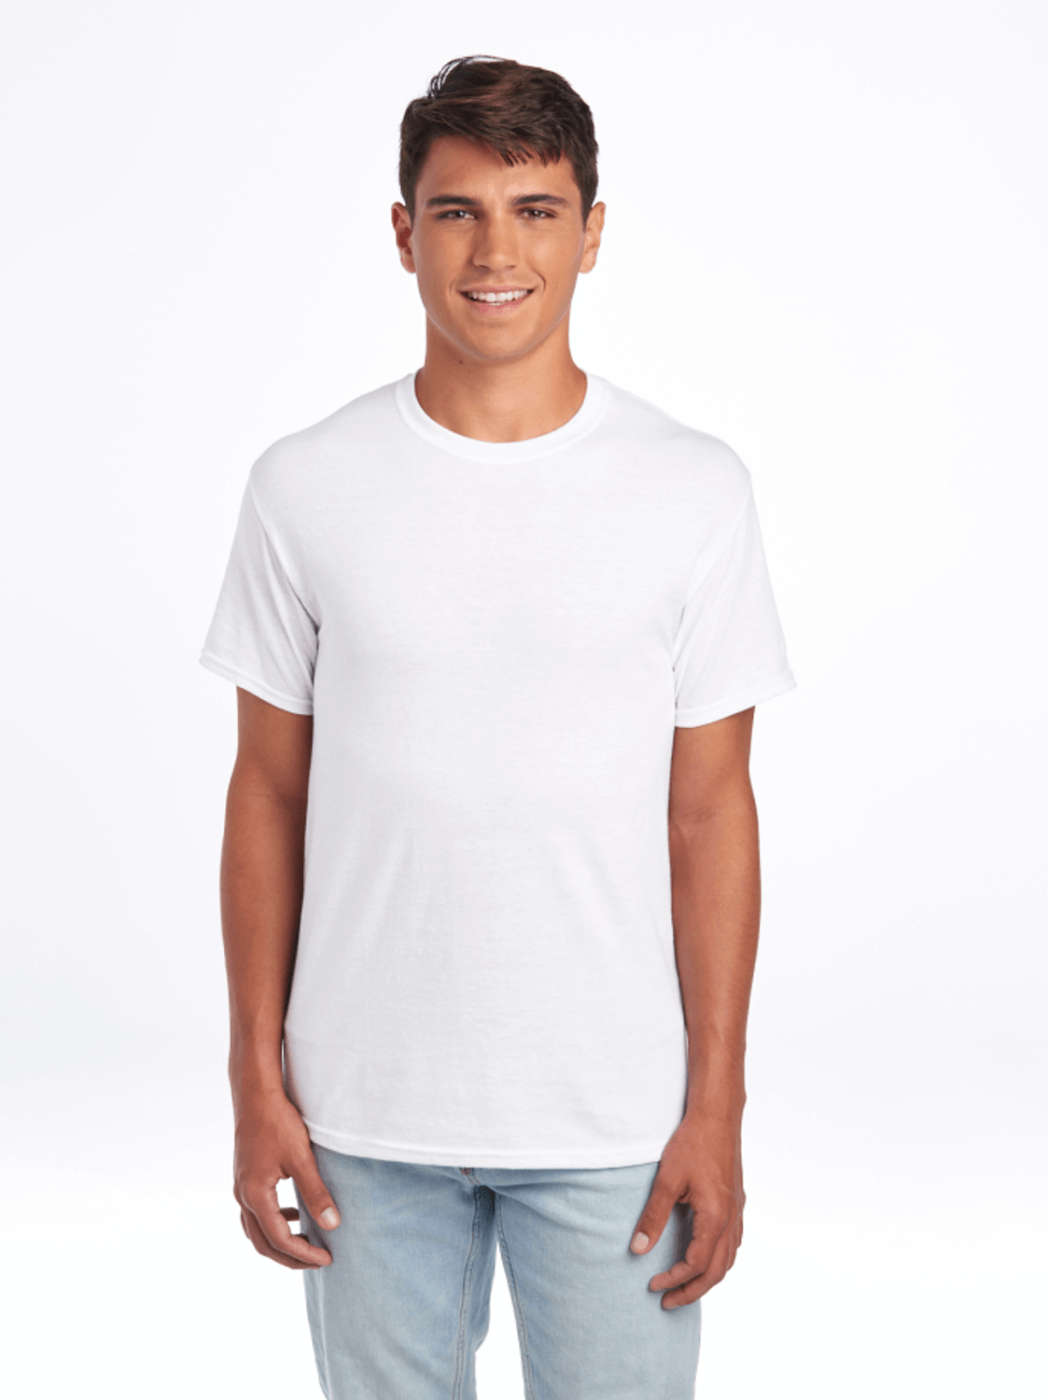 Cotton Plain Full Sleeves White V Neck T Shirt, Packaging Type